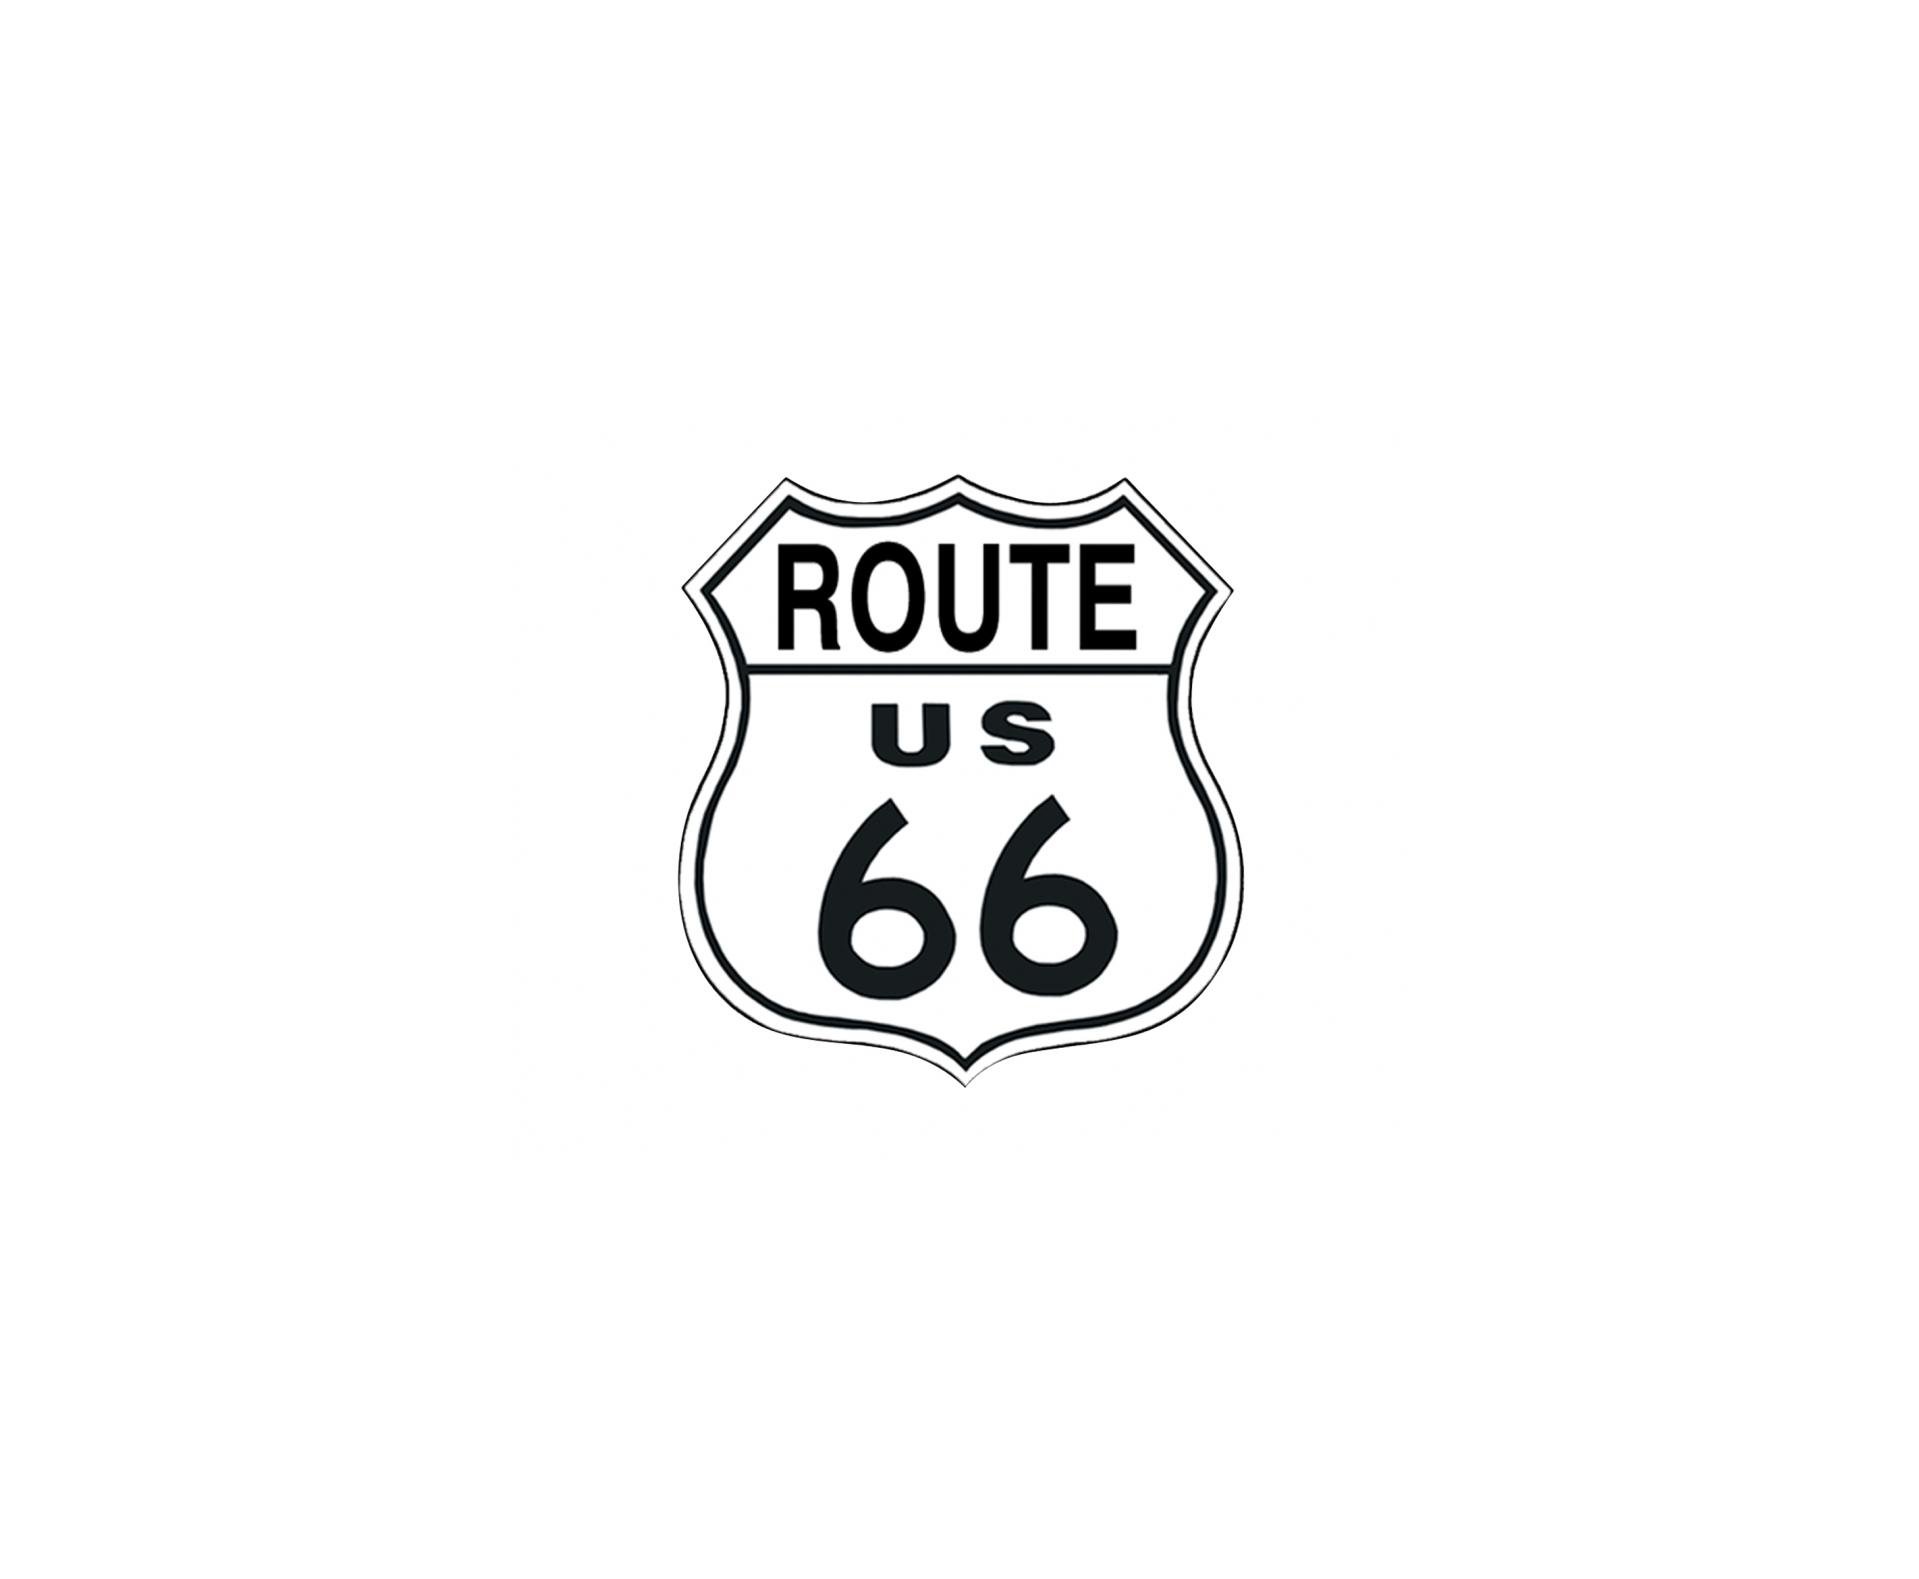 Placa Metálica Decorativa Us Route 66 - Rossi